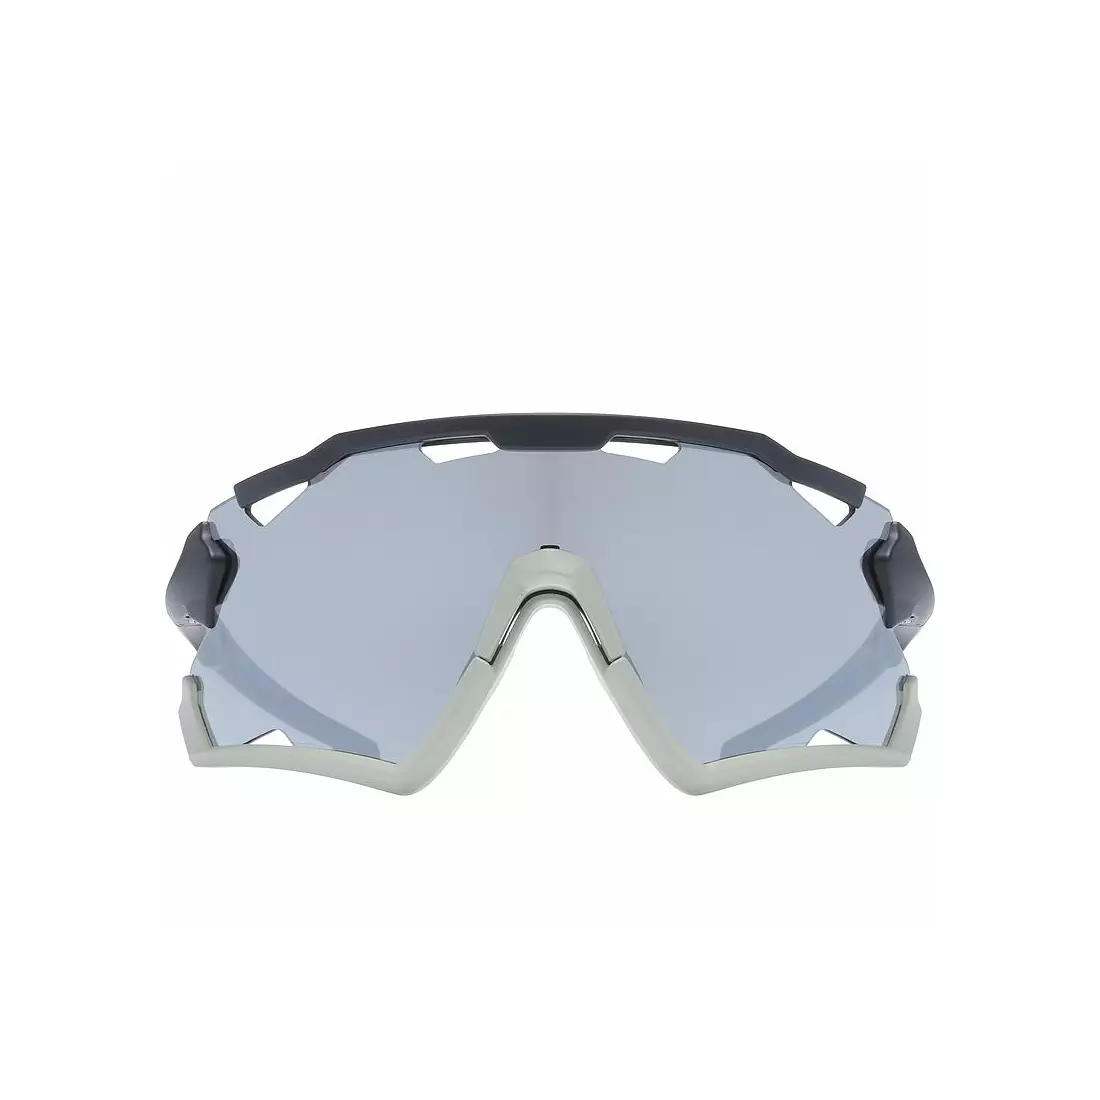 Športové okuliare UVEX Sportstyle 228 mirror silver (S3), čierno-sivé